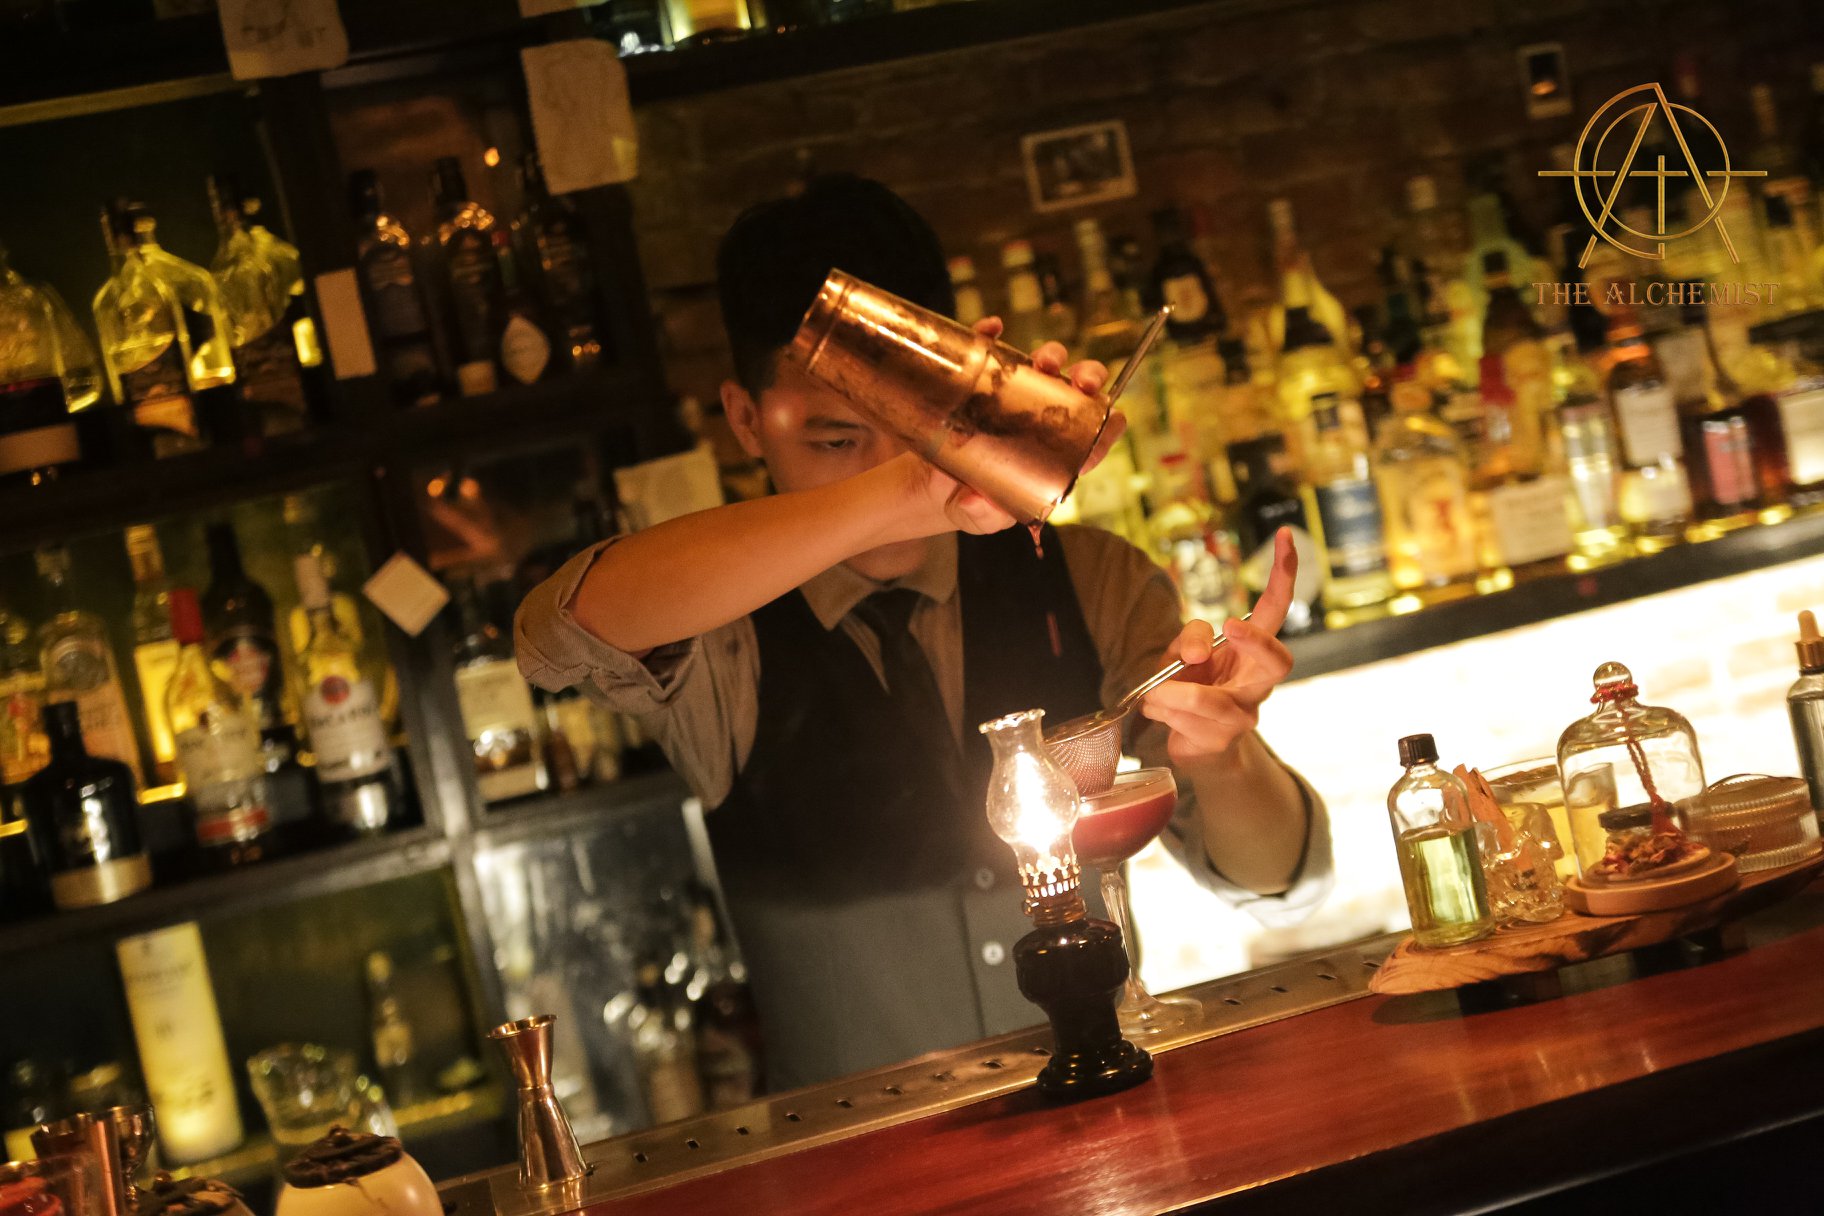 The Alchemist - Cocktail bar